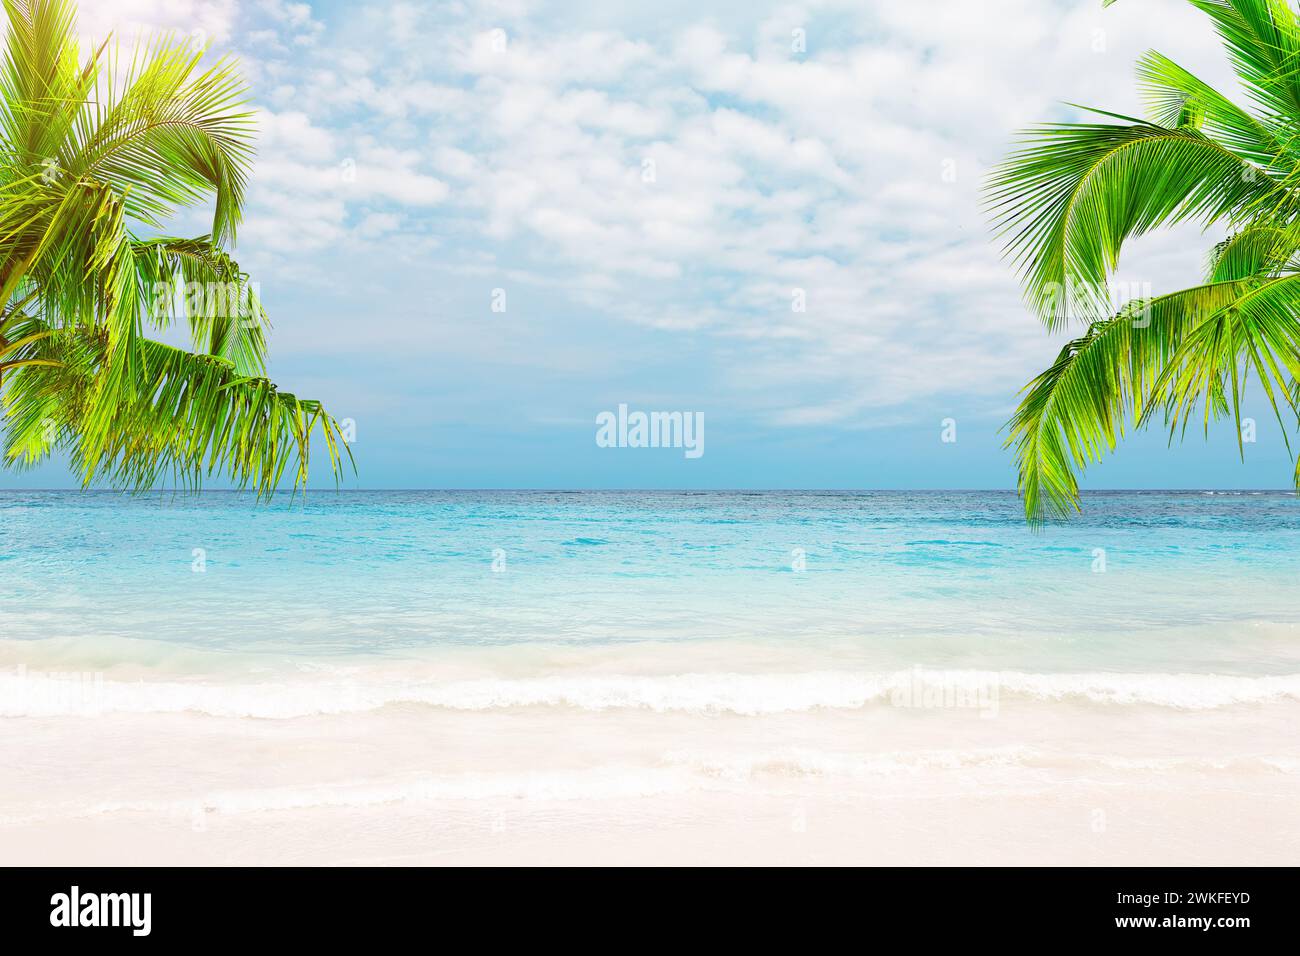 Hermosa playa de arena blanca con agua turquesa, palmeras de coco y cielo azul con nubes en Punta Cana, República Dominicana. Foto de stock